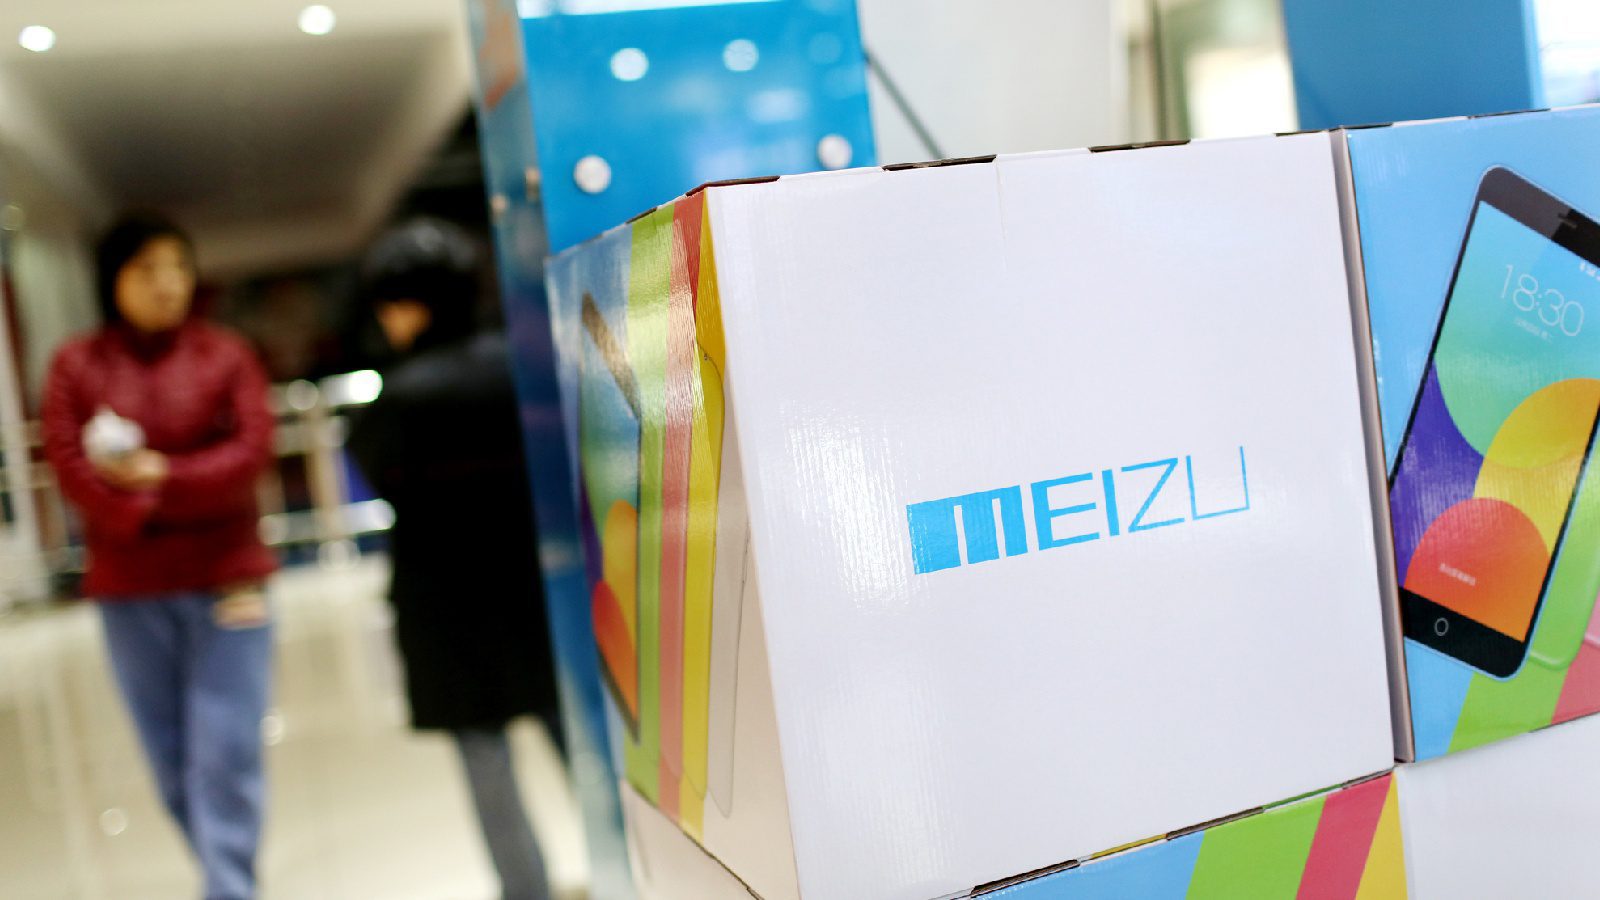 Meizu Smartphone